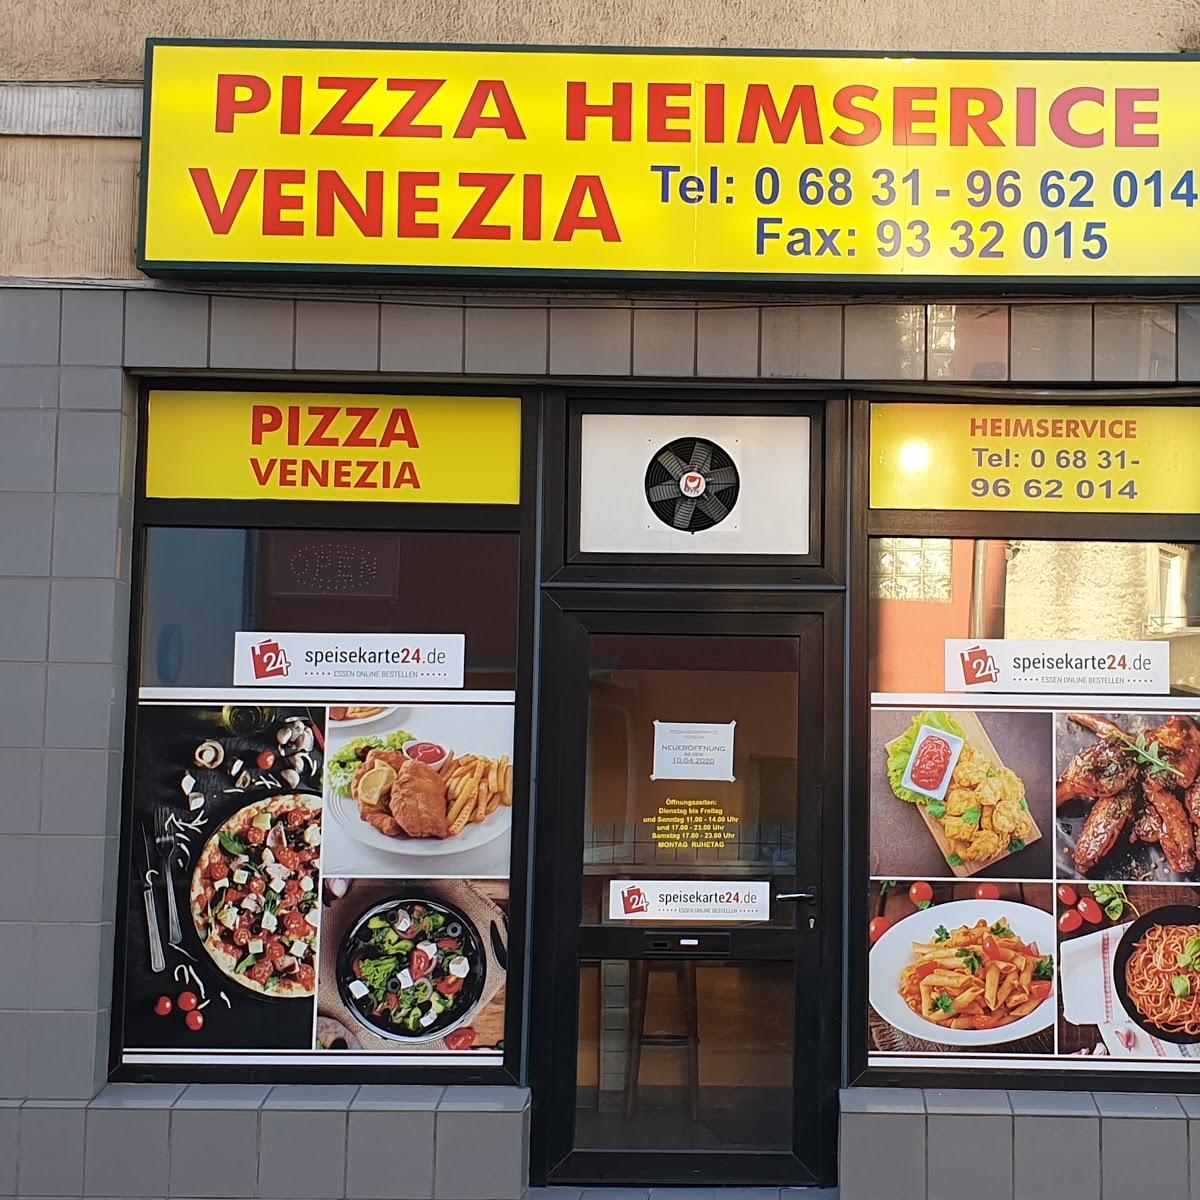 Restaurant "Pizza Heimservice Venezia" in Dillingen-Saar